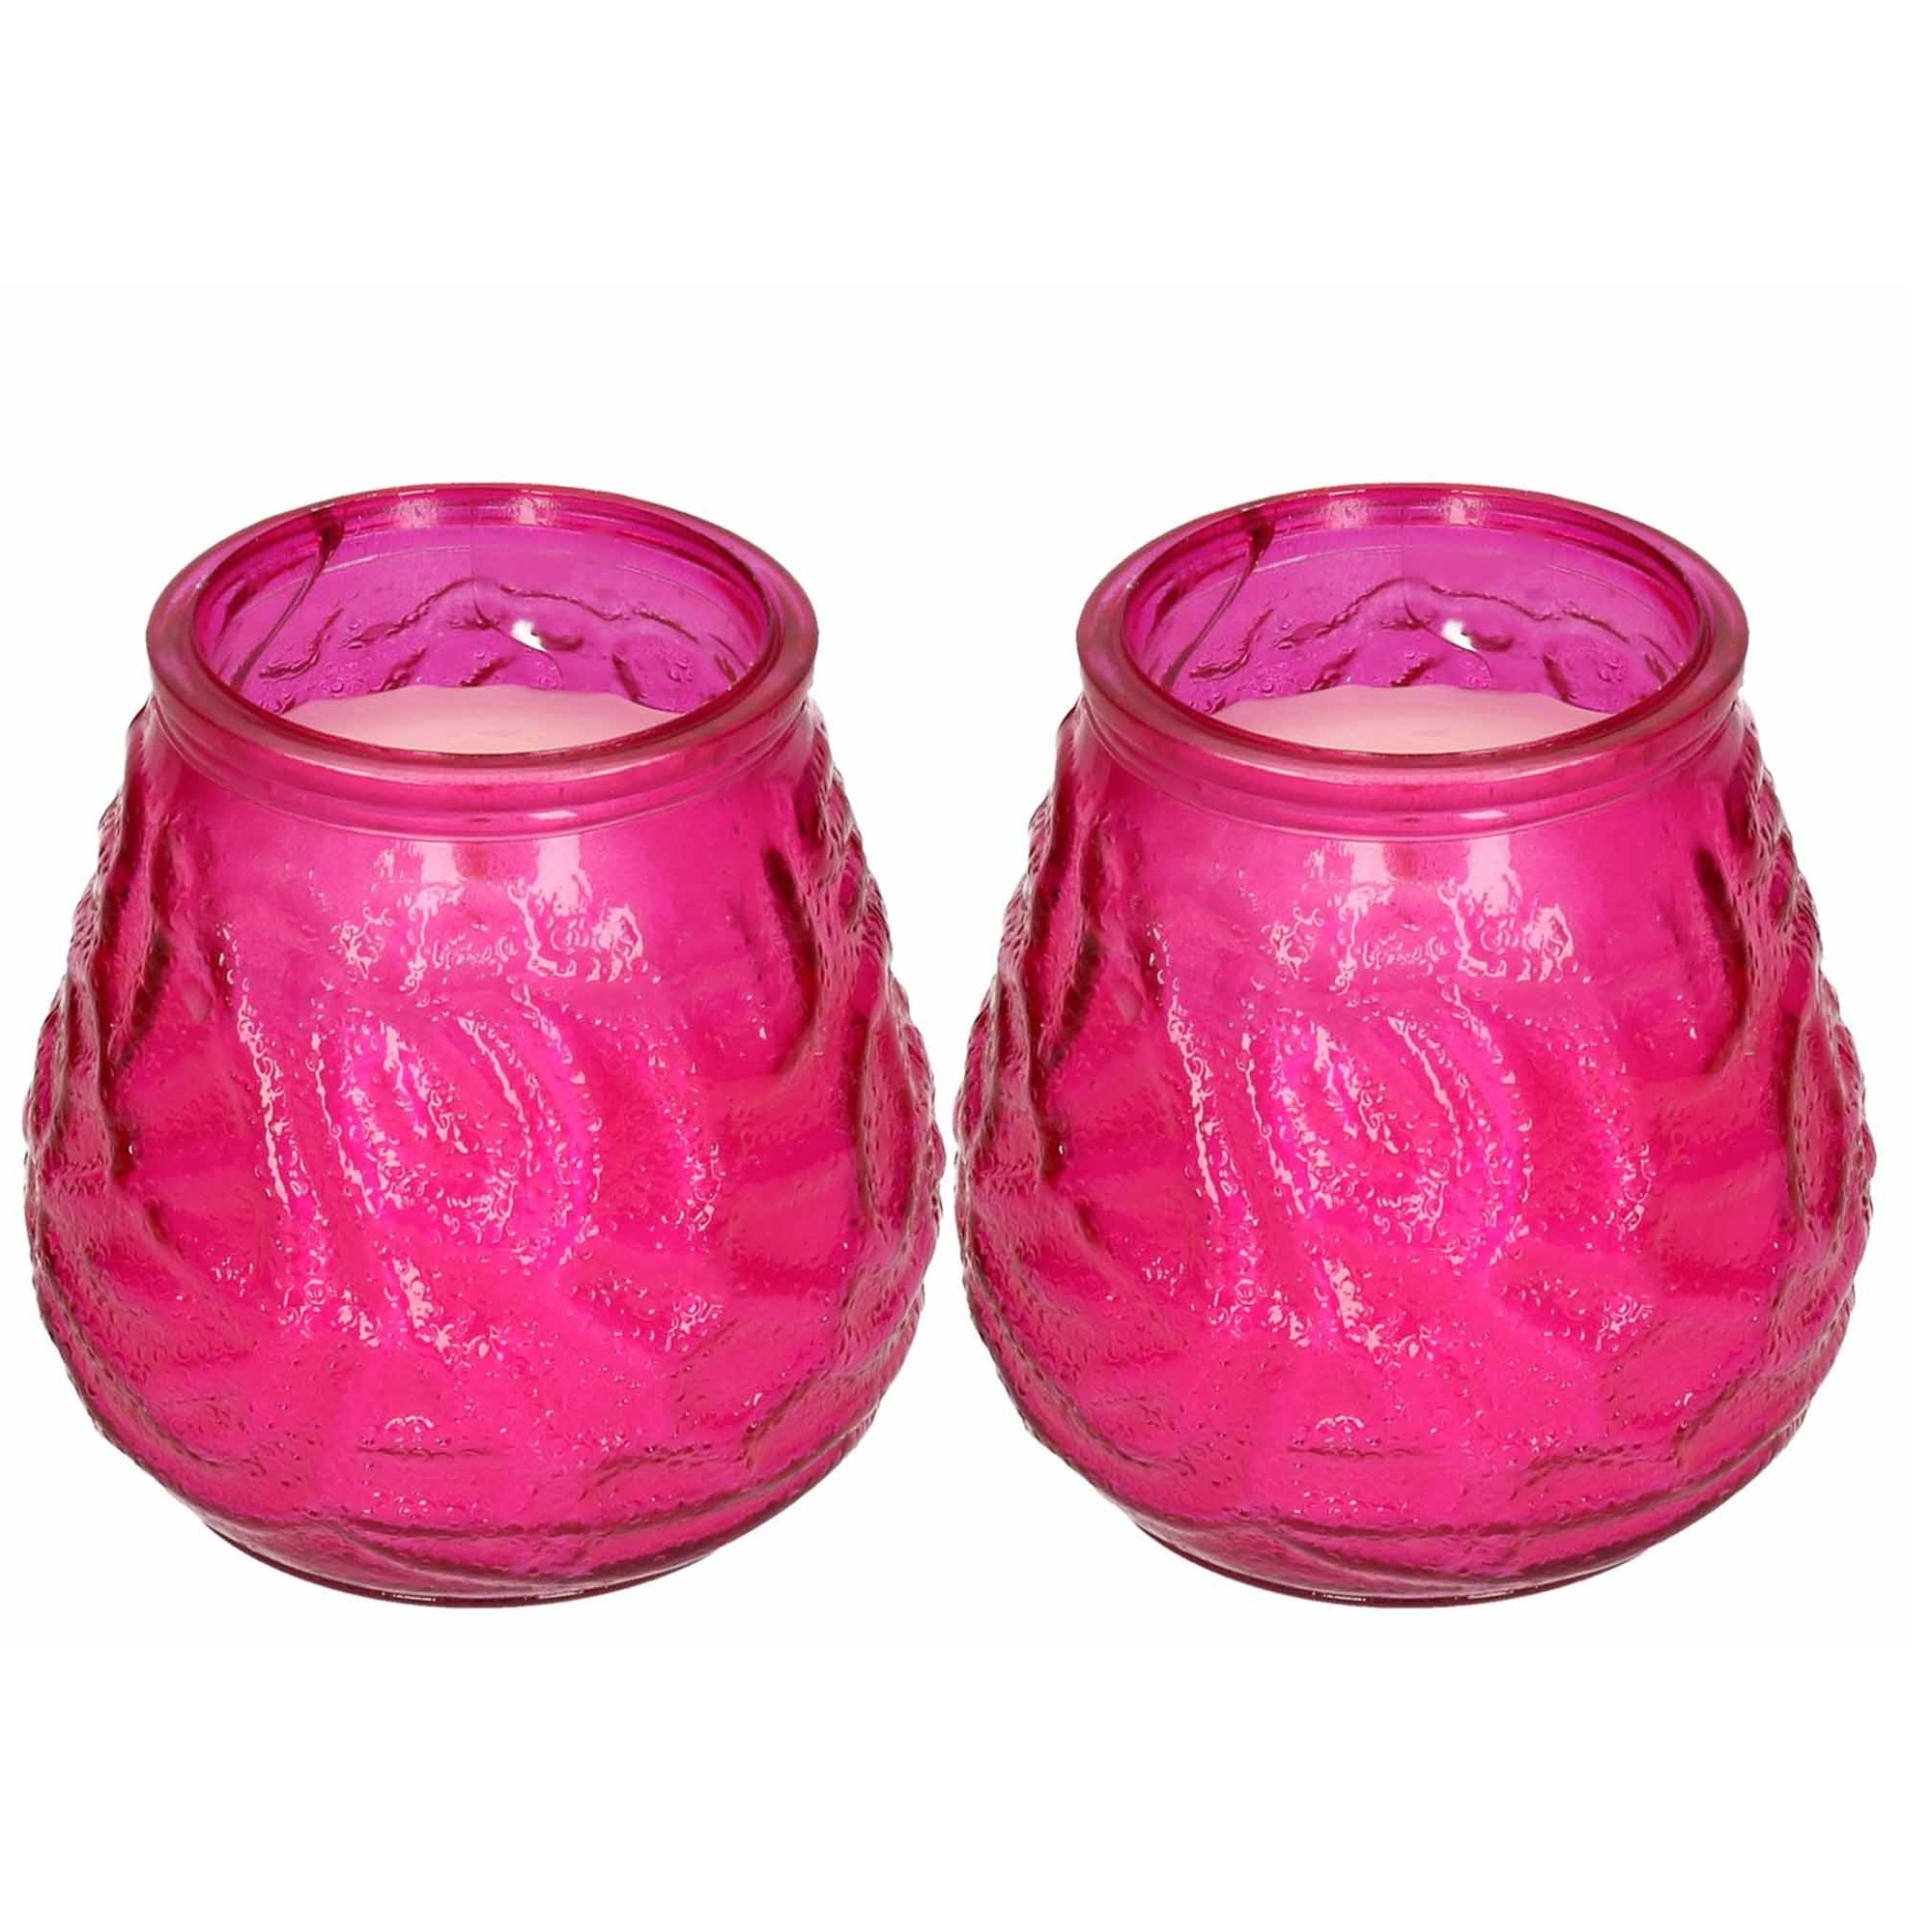 Windlicht geurkaars - 2x - roze glas - 48 branduren - citrusgeur